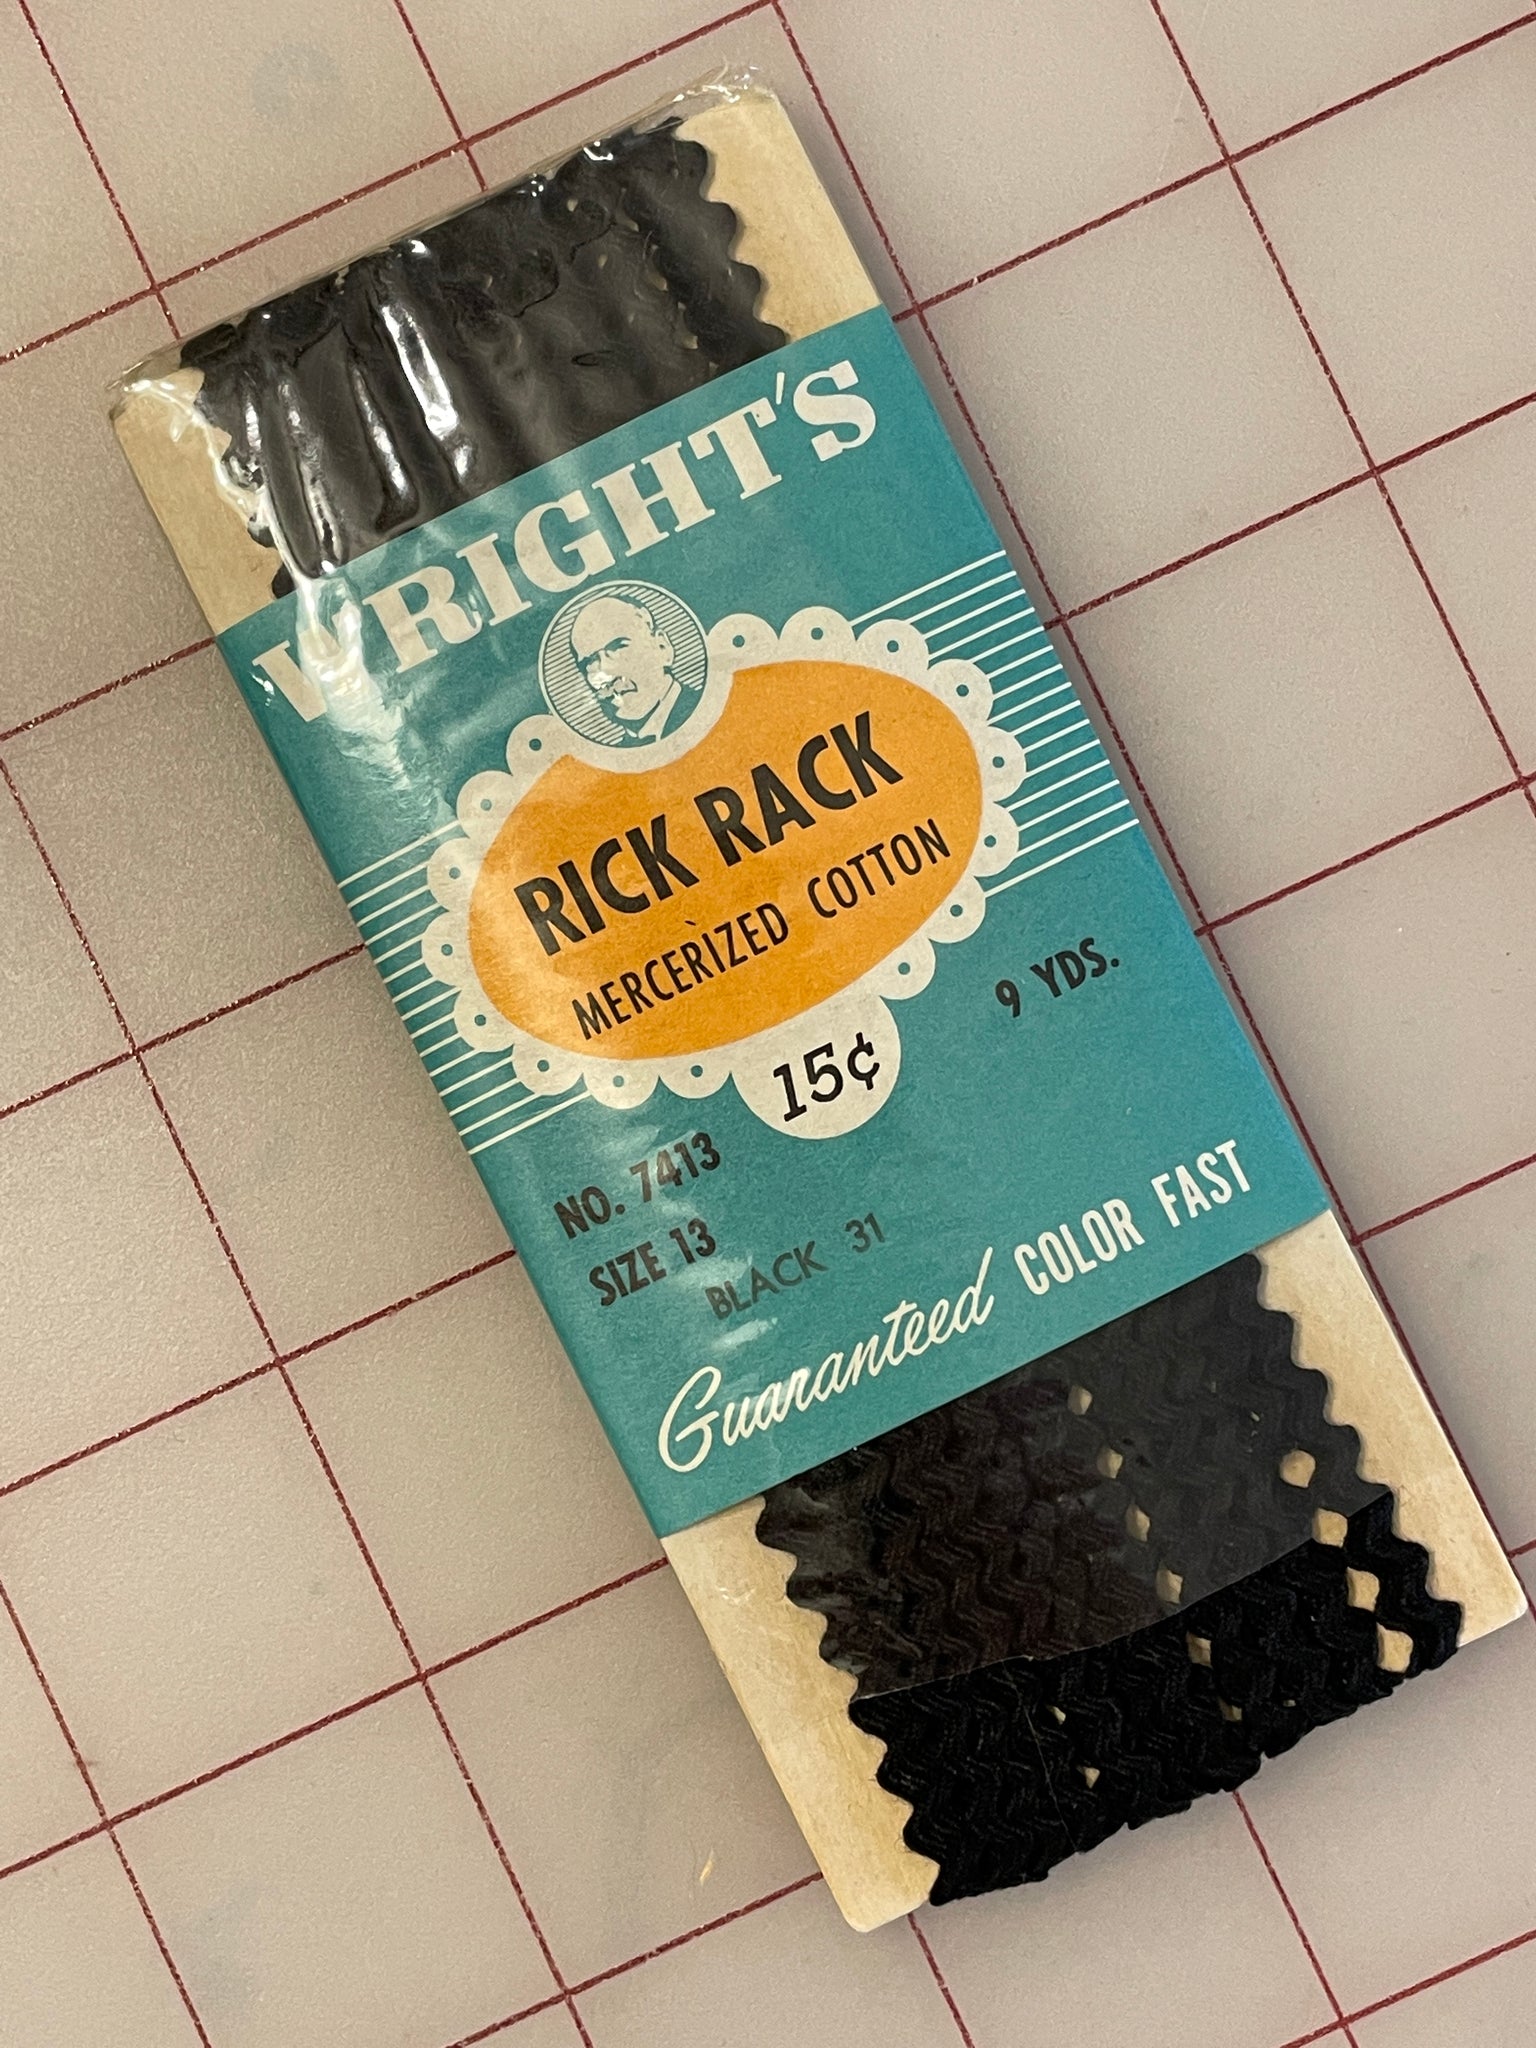 SALE 9 YD 1/4" Rick Rack Vintage - Black